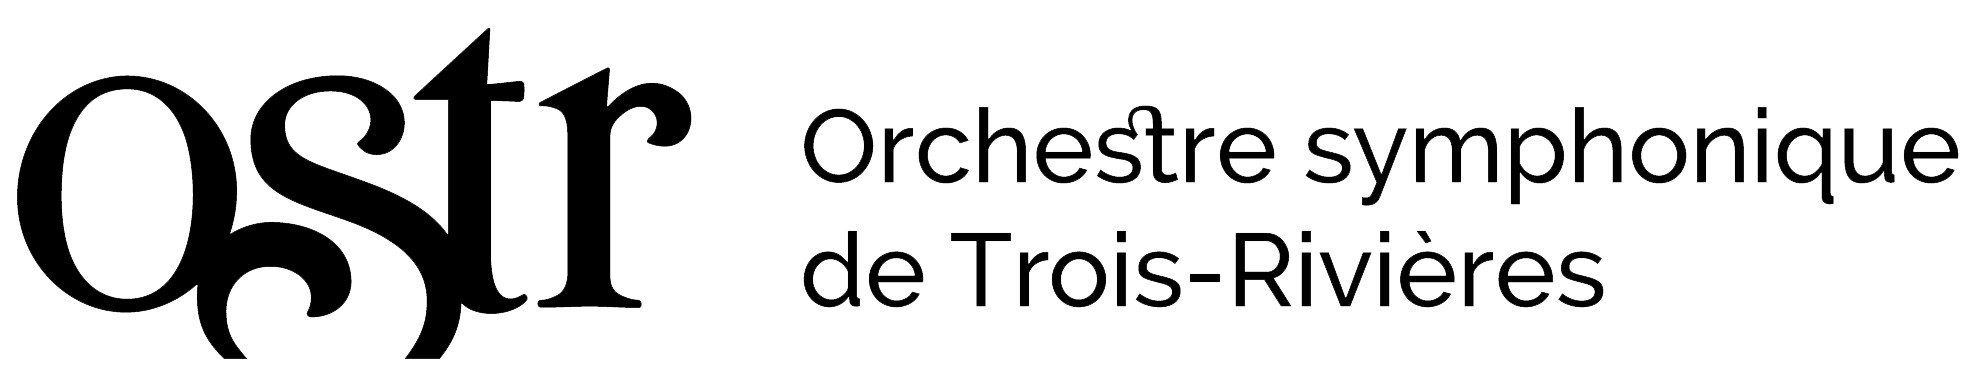 Orchestre symphonique de Trois-Rivières